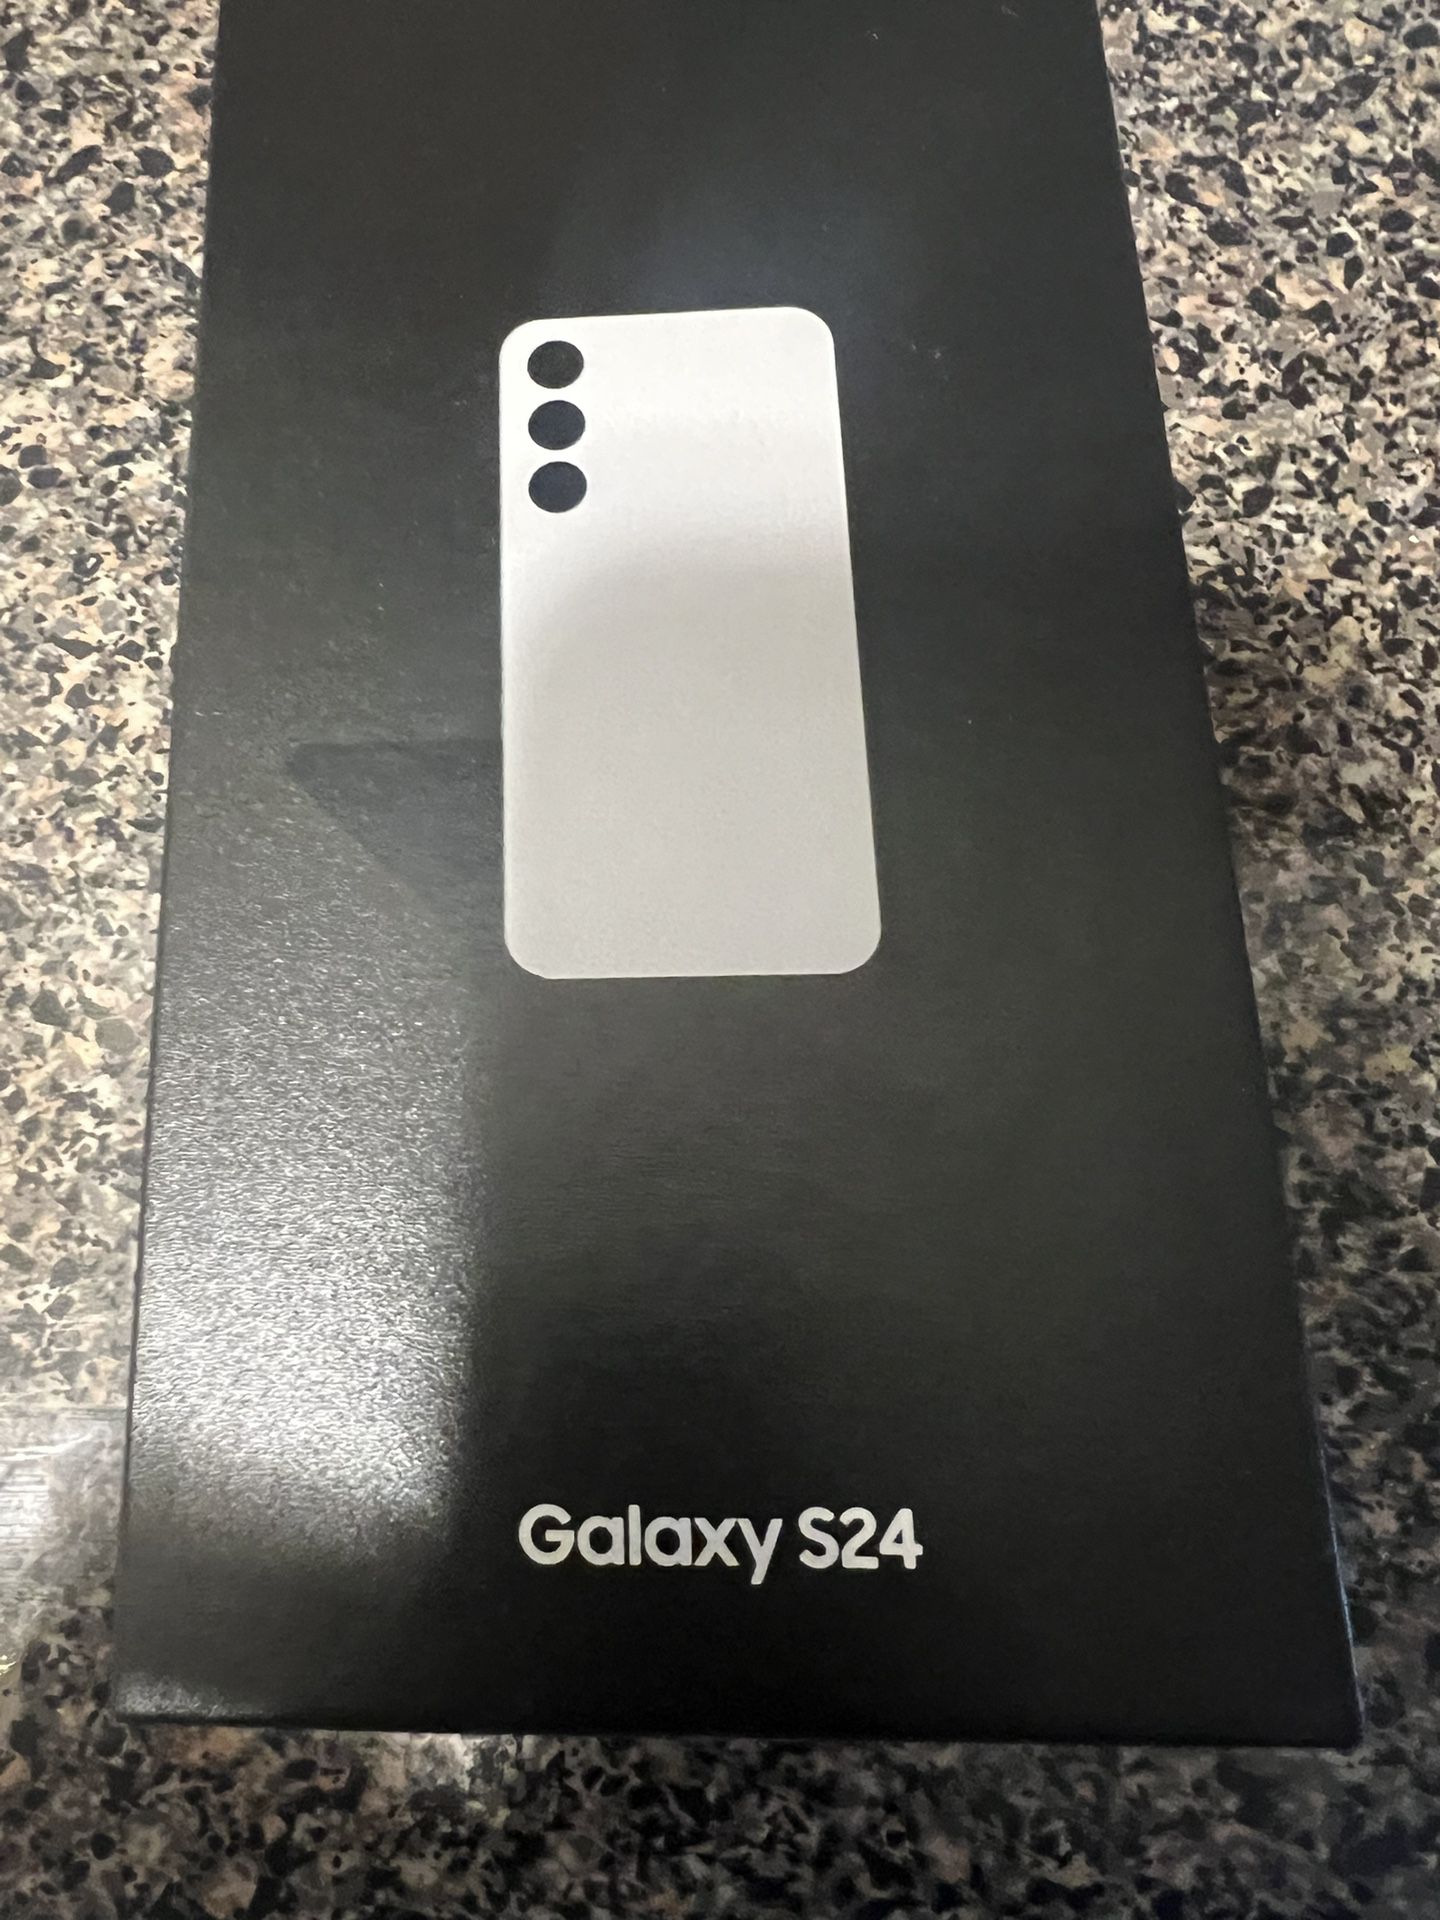 Samsung Galaxy S24 (unlocked)